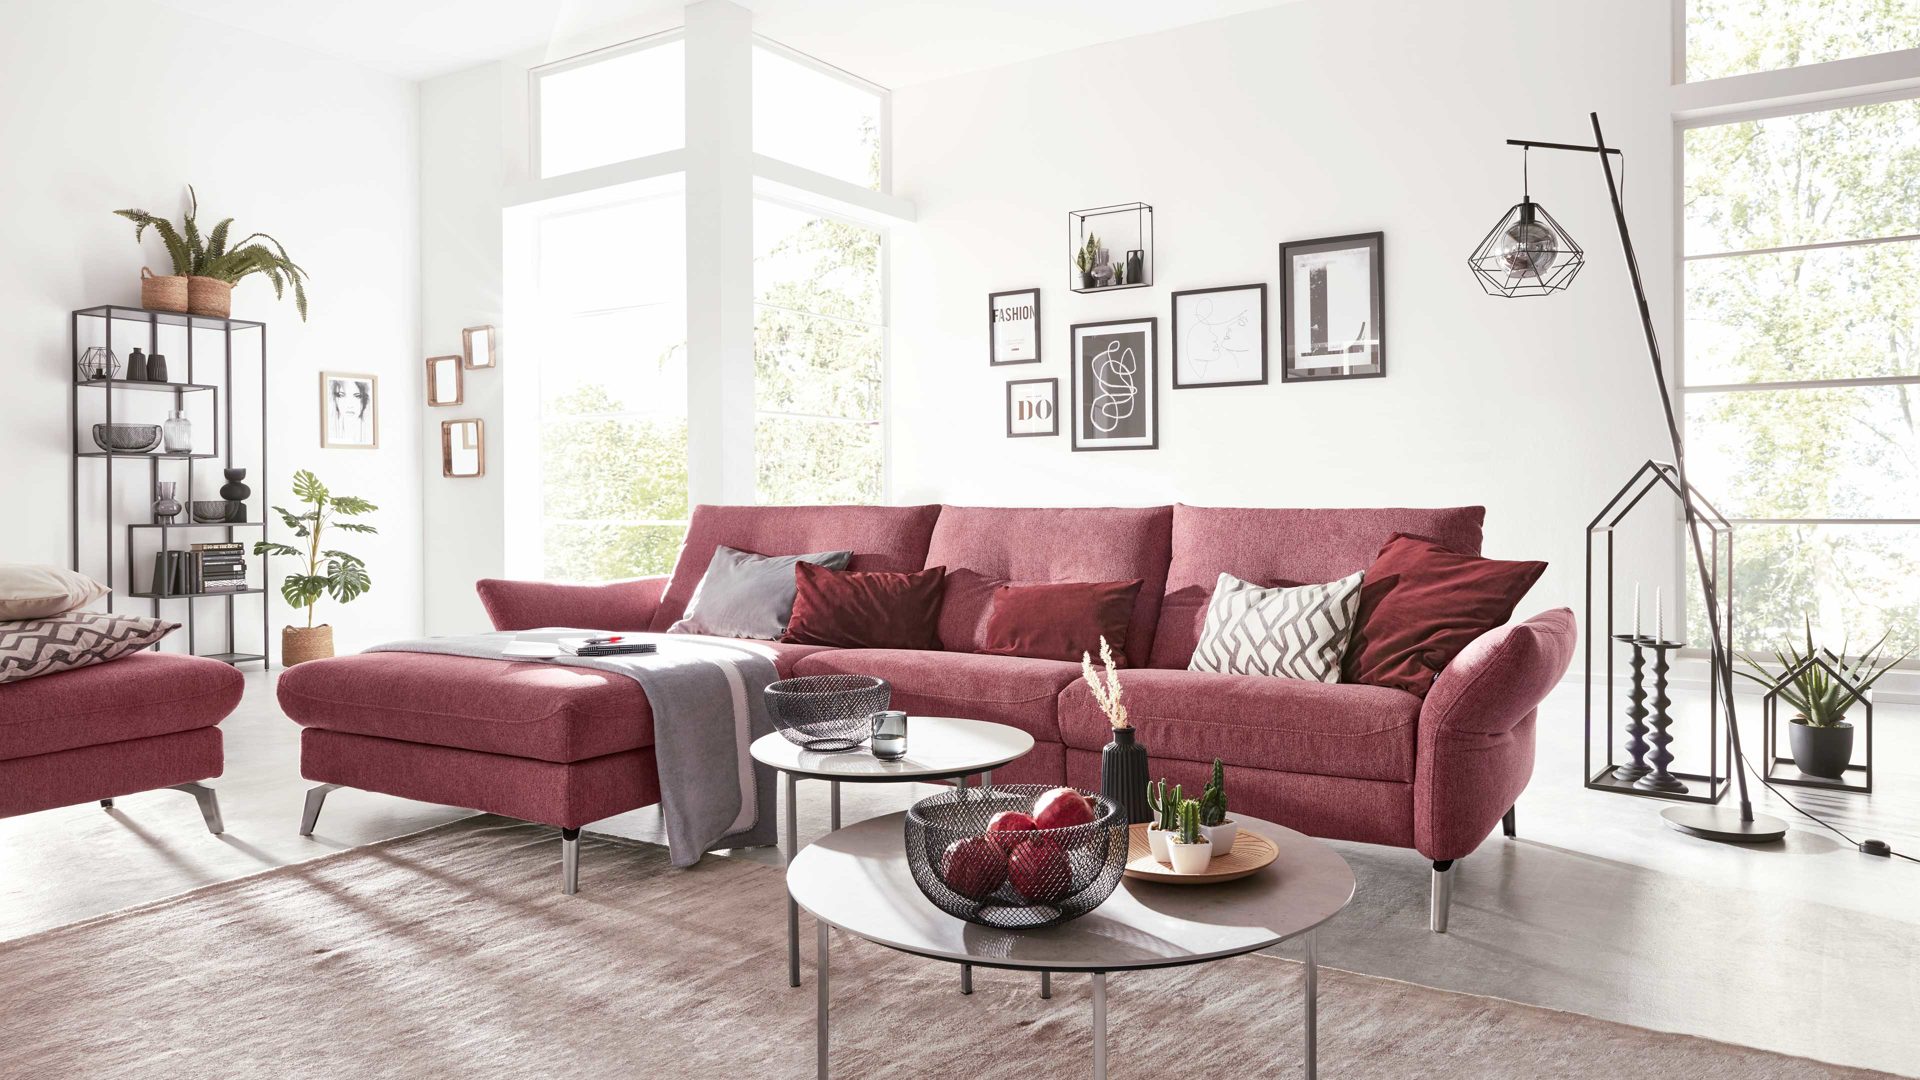 Wohnland Breitwieser , Möbel A-Z, Sofa + Couch, Ecksofas, Interliving,  Interliving Sofa Serie 4400 - Ecksofa, pastellvioletter Bezug GCP 8 -  Stellfläche ca. 167 x 296 cm